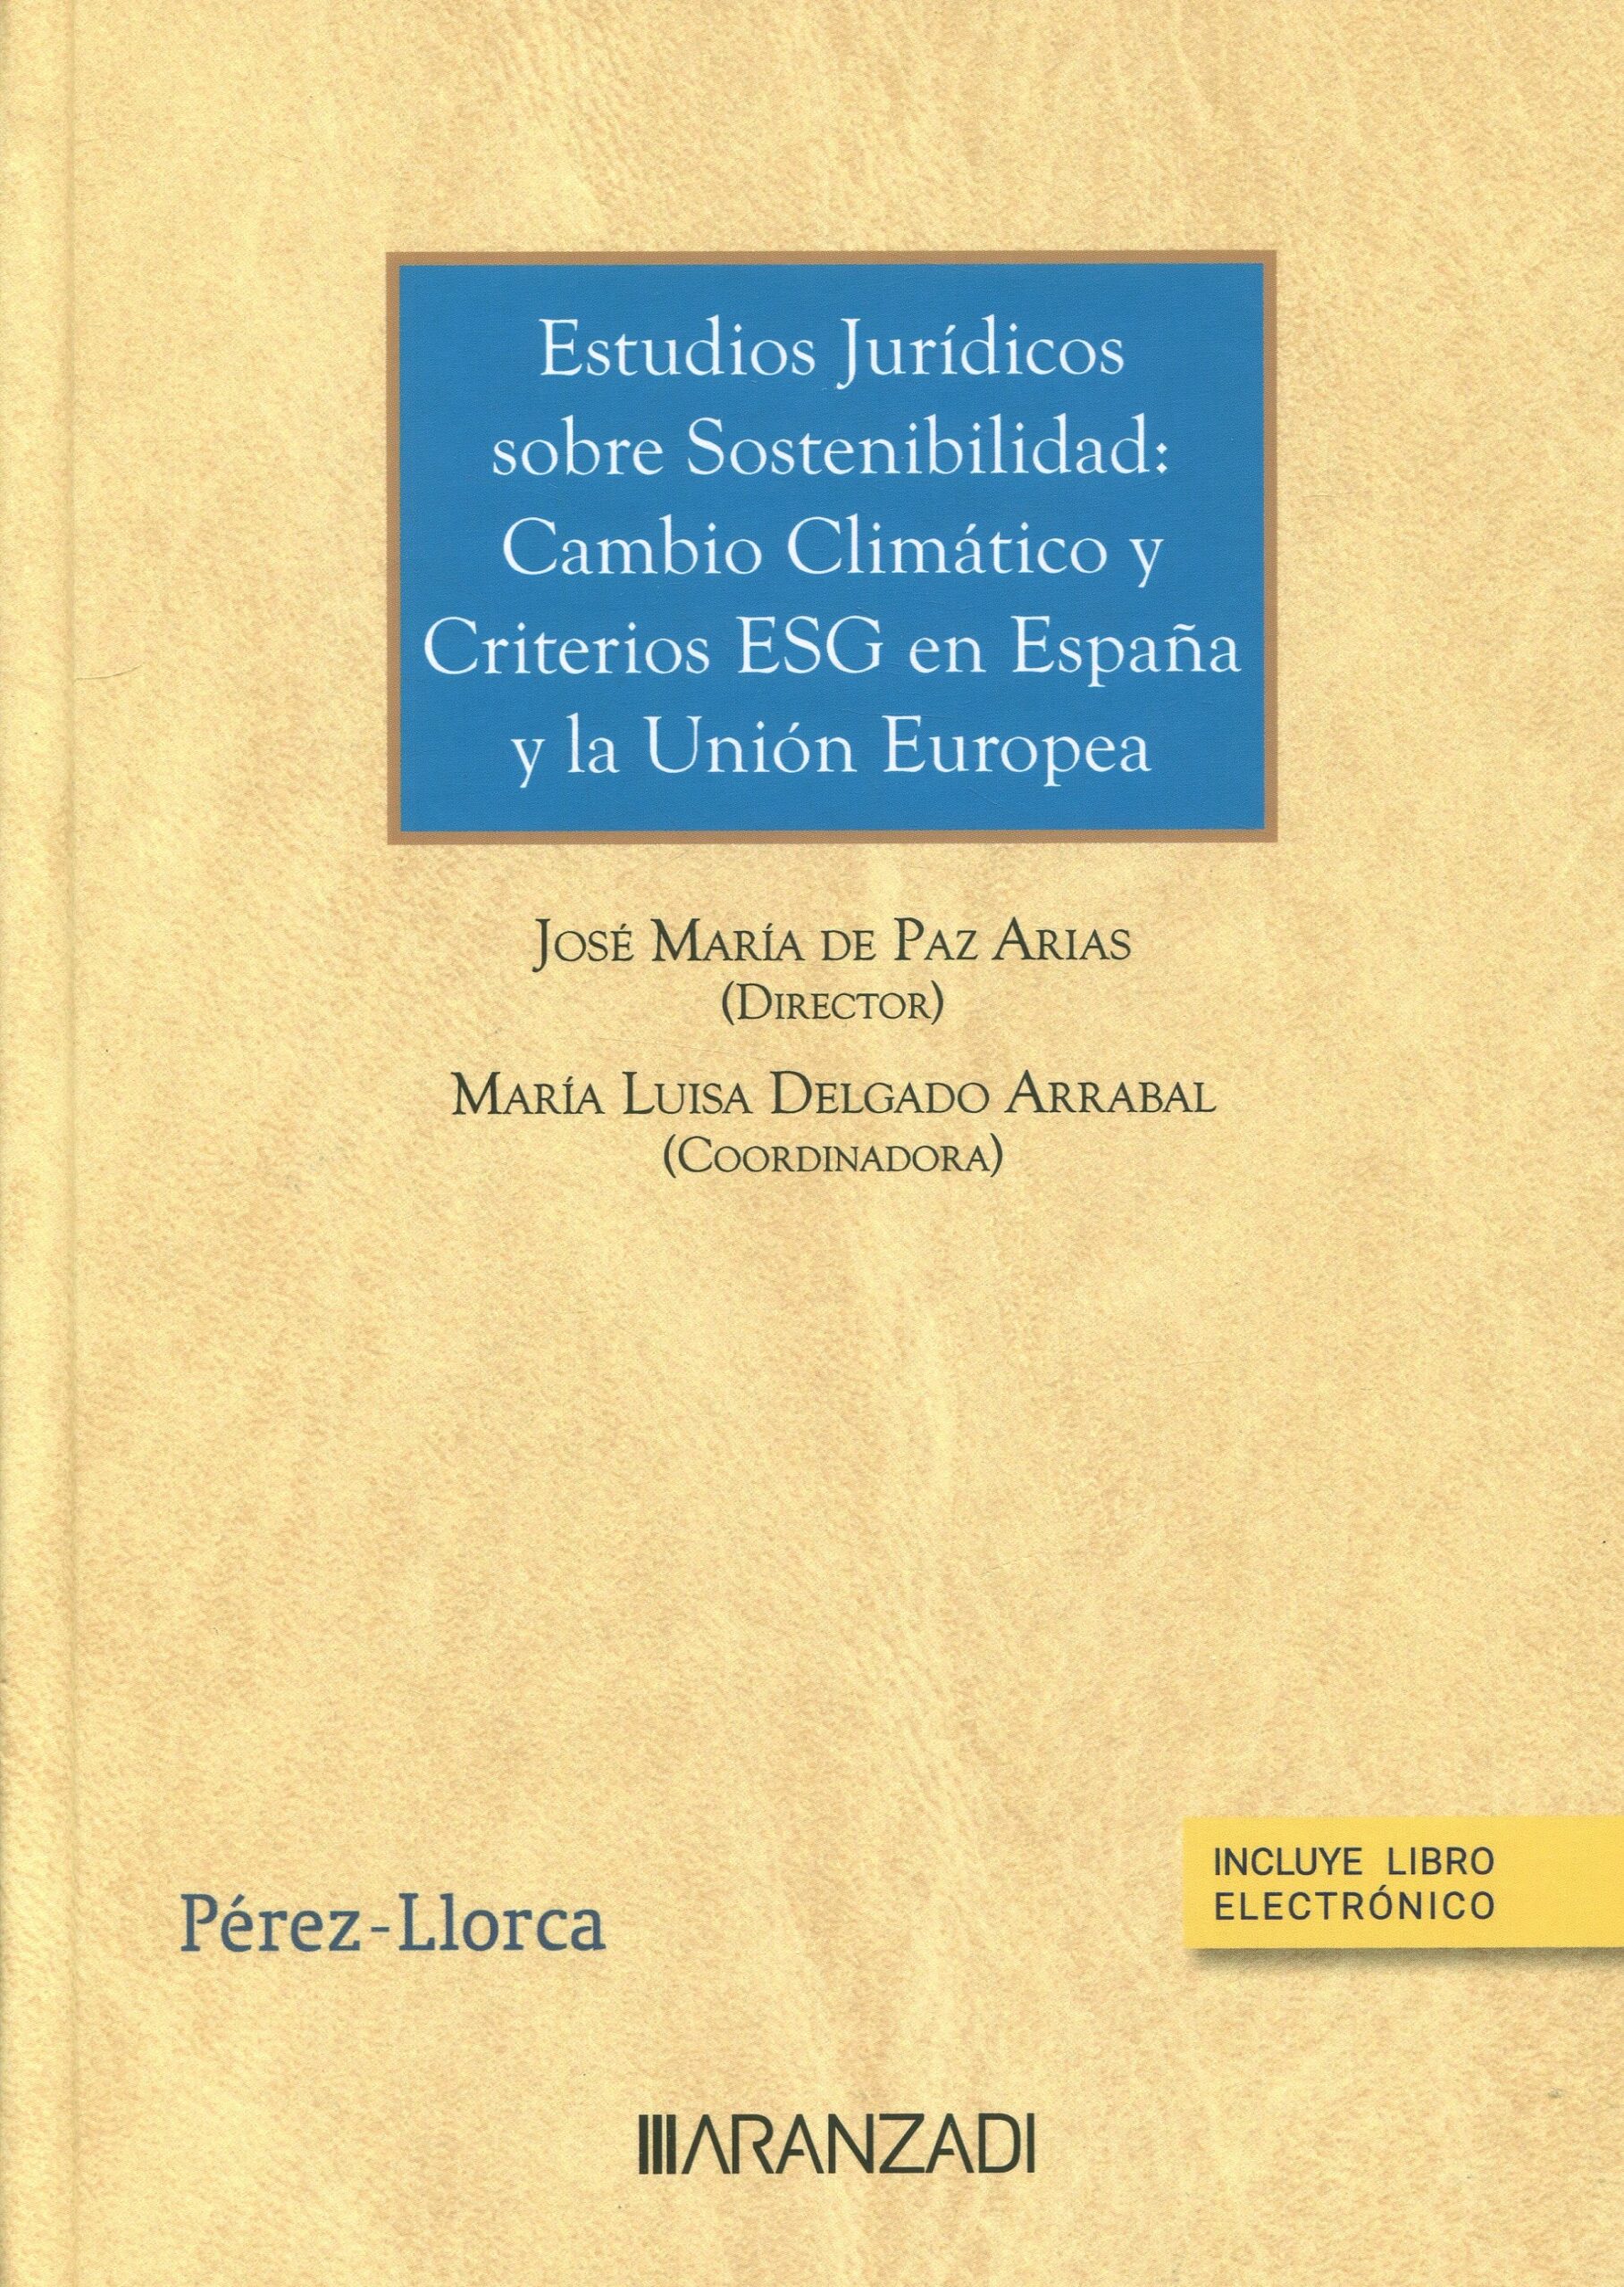 Imagen de portada del libro Estudios jurídicos sobre sostenibilidad